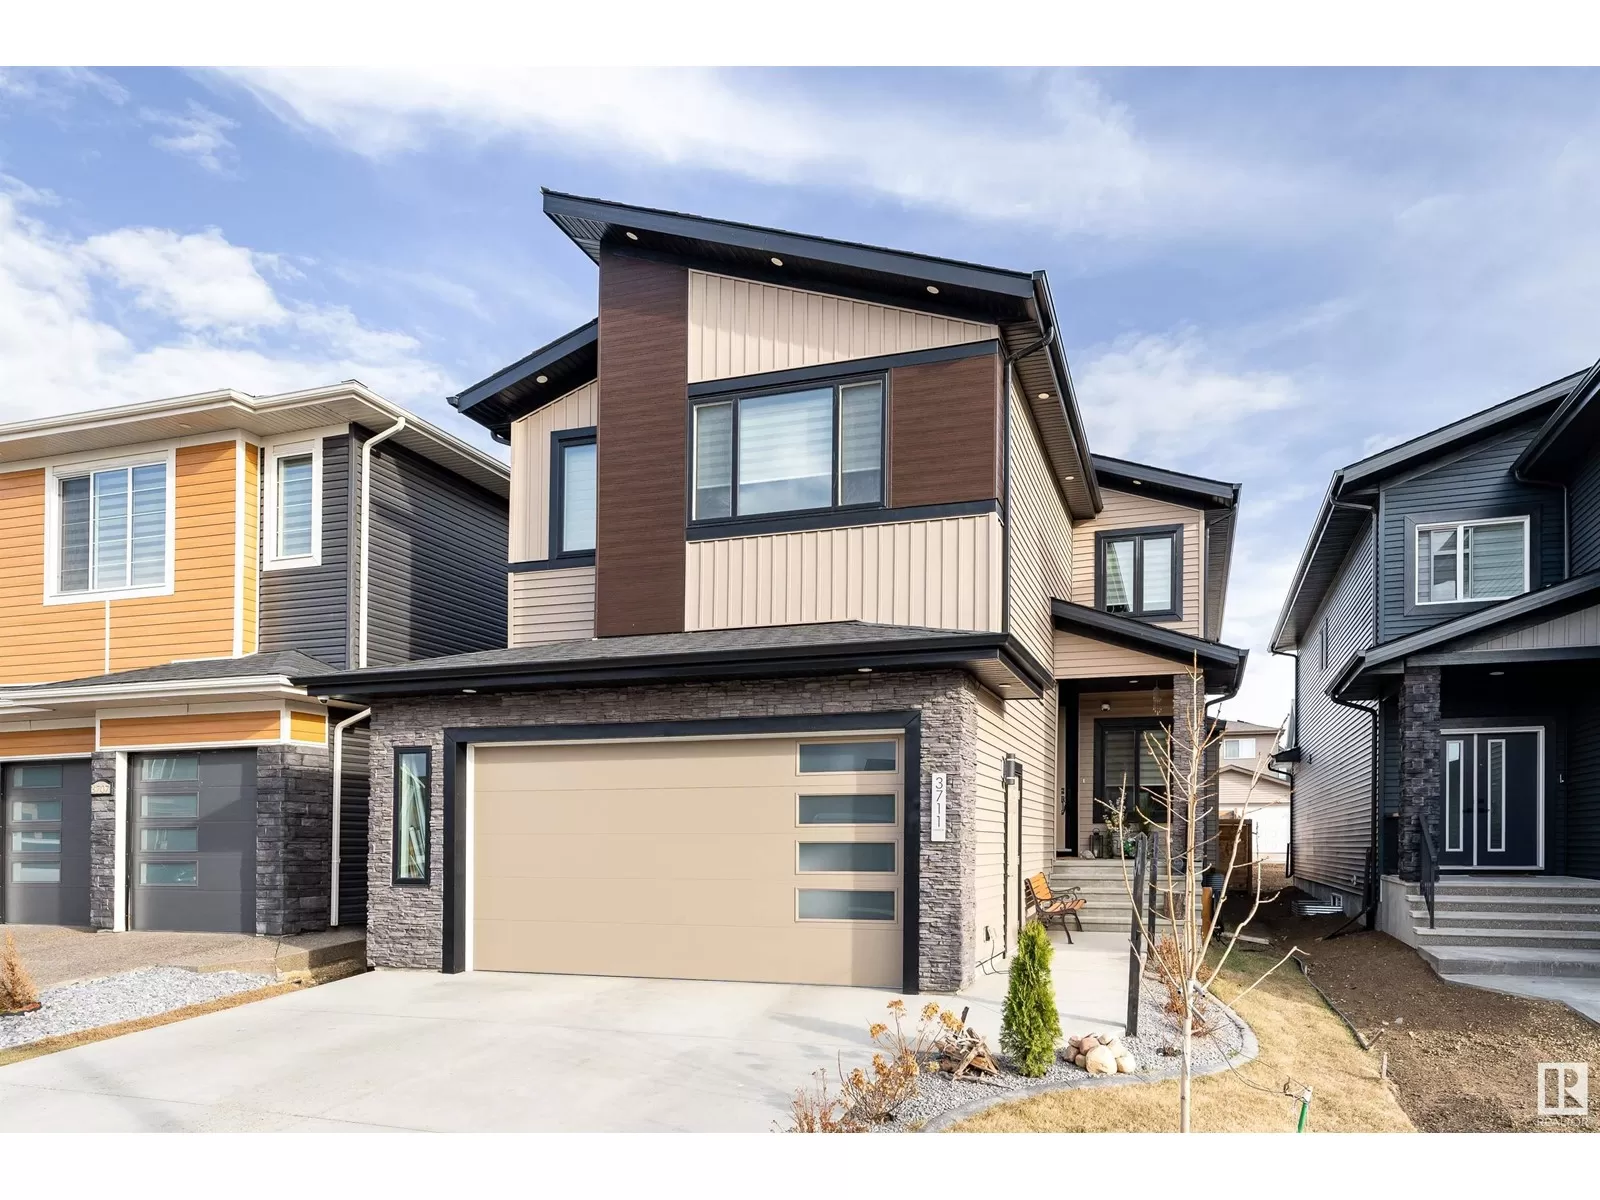 House for rent: 3711 3 Av Sw, Edmonton, Alberta T6X 2W3